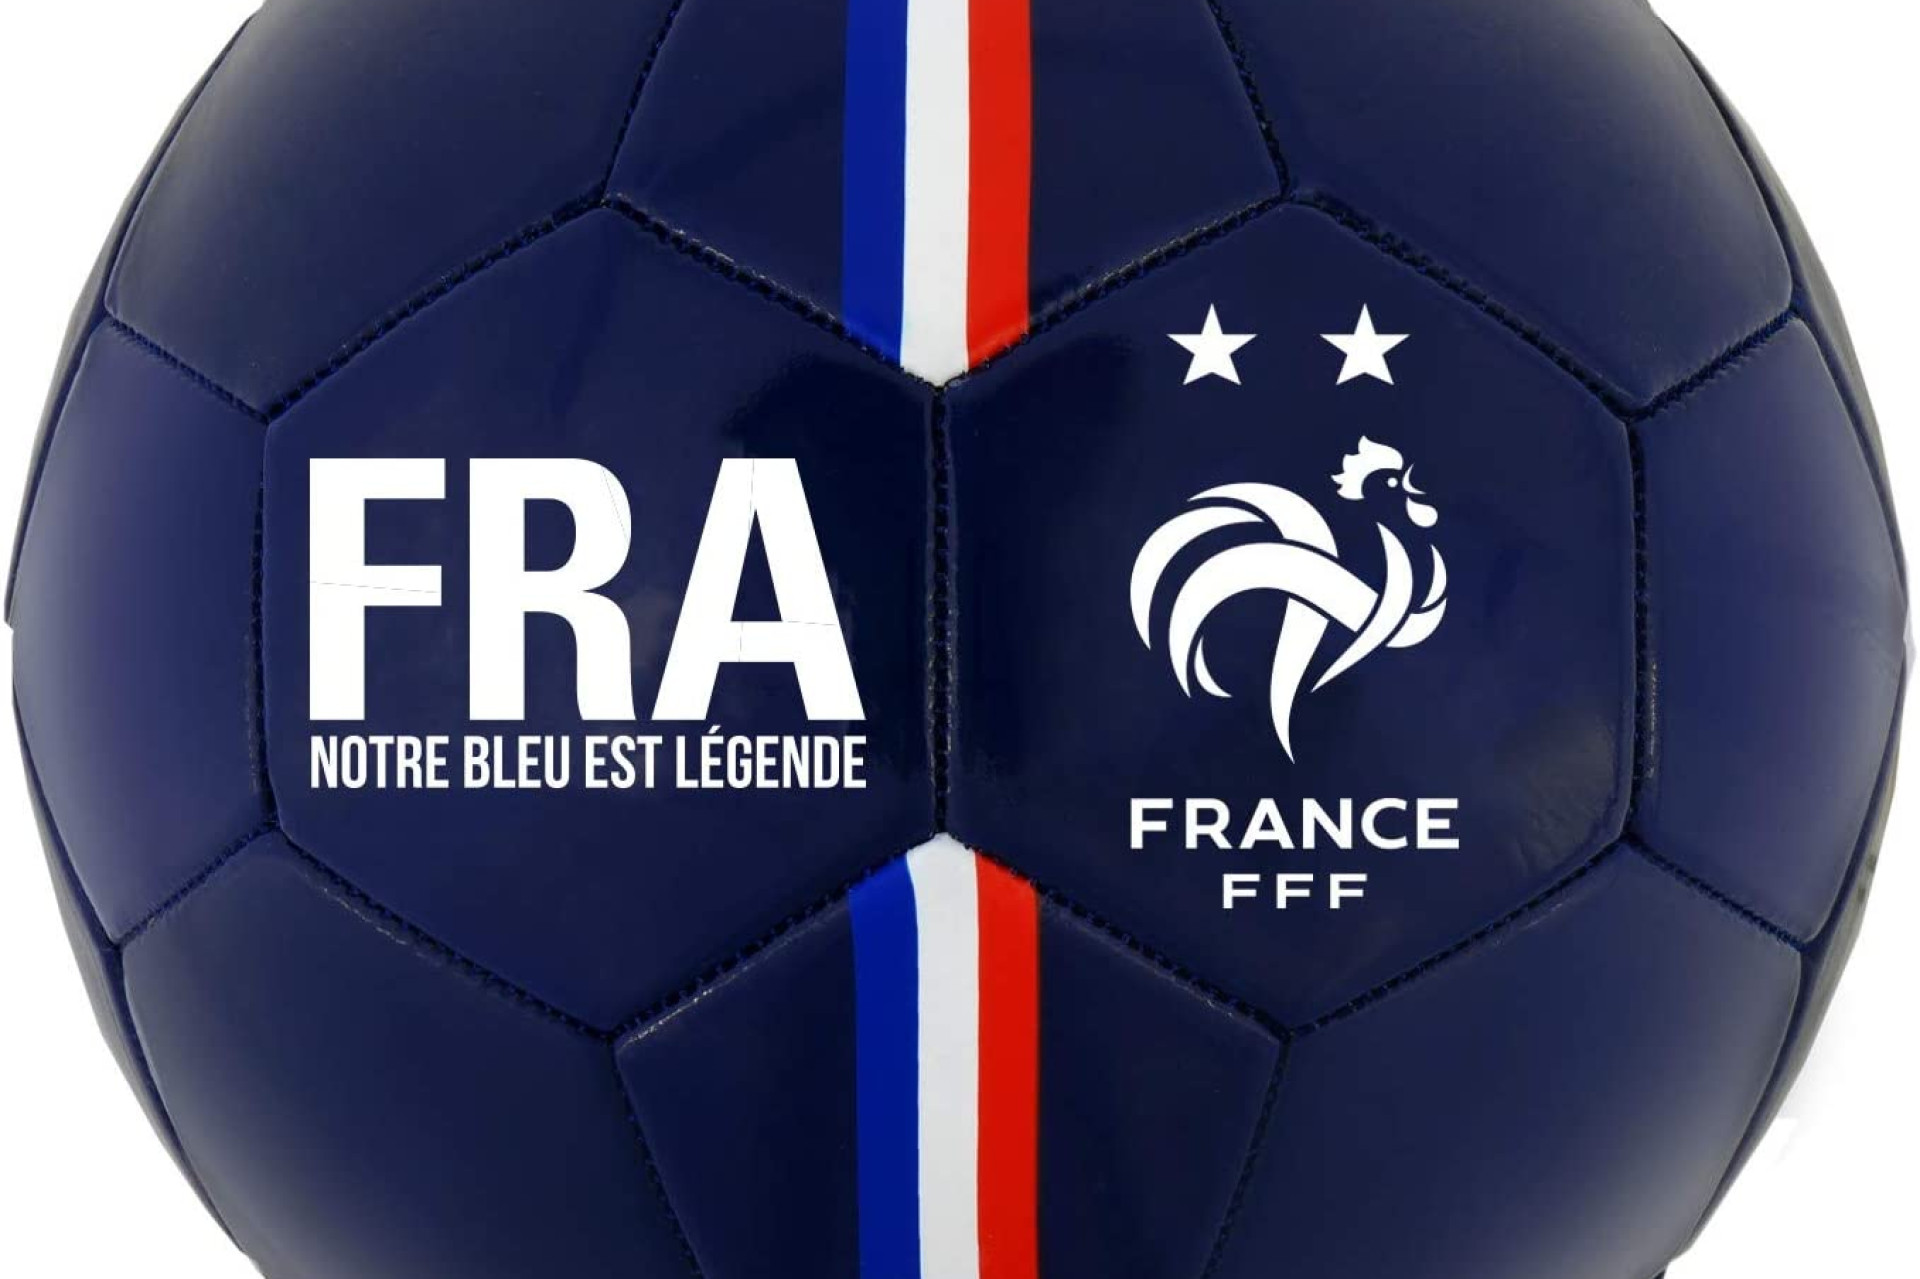 Acheter Ballon de Football France FFF - 2 étoiles - Collection Officielle Equipe de France de Football - T 5 